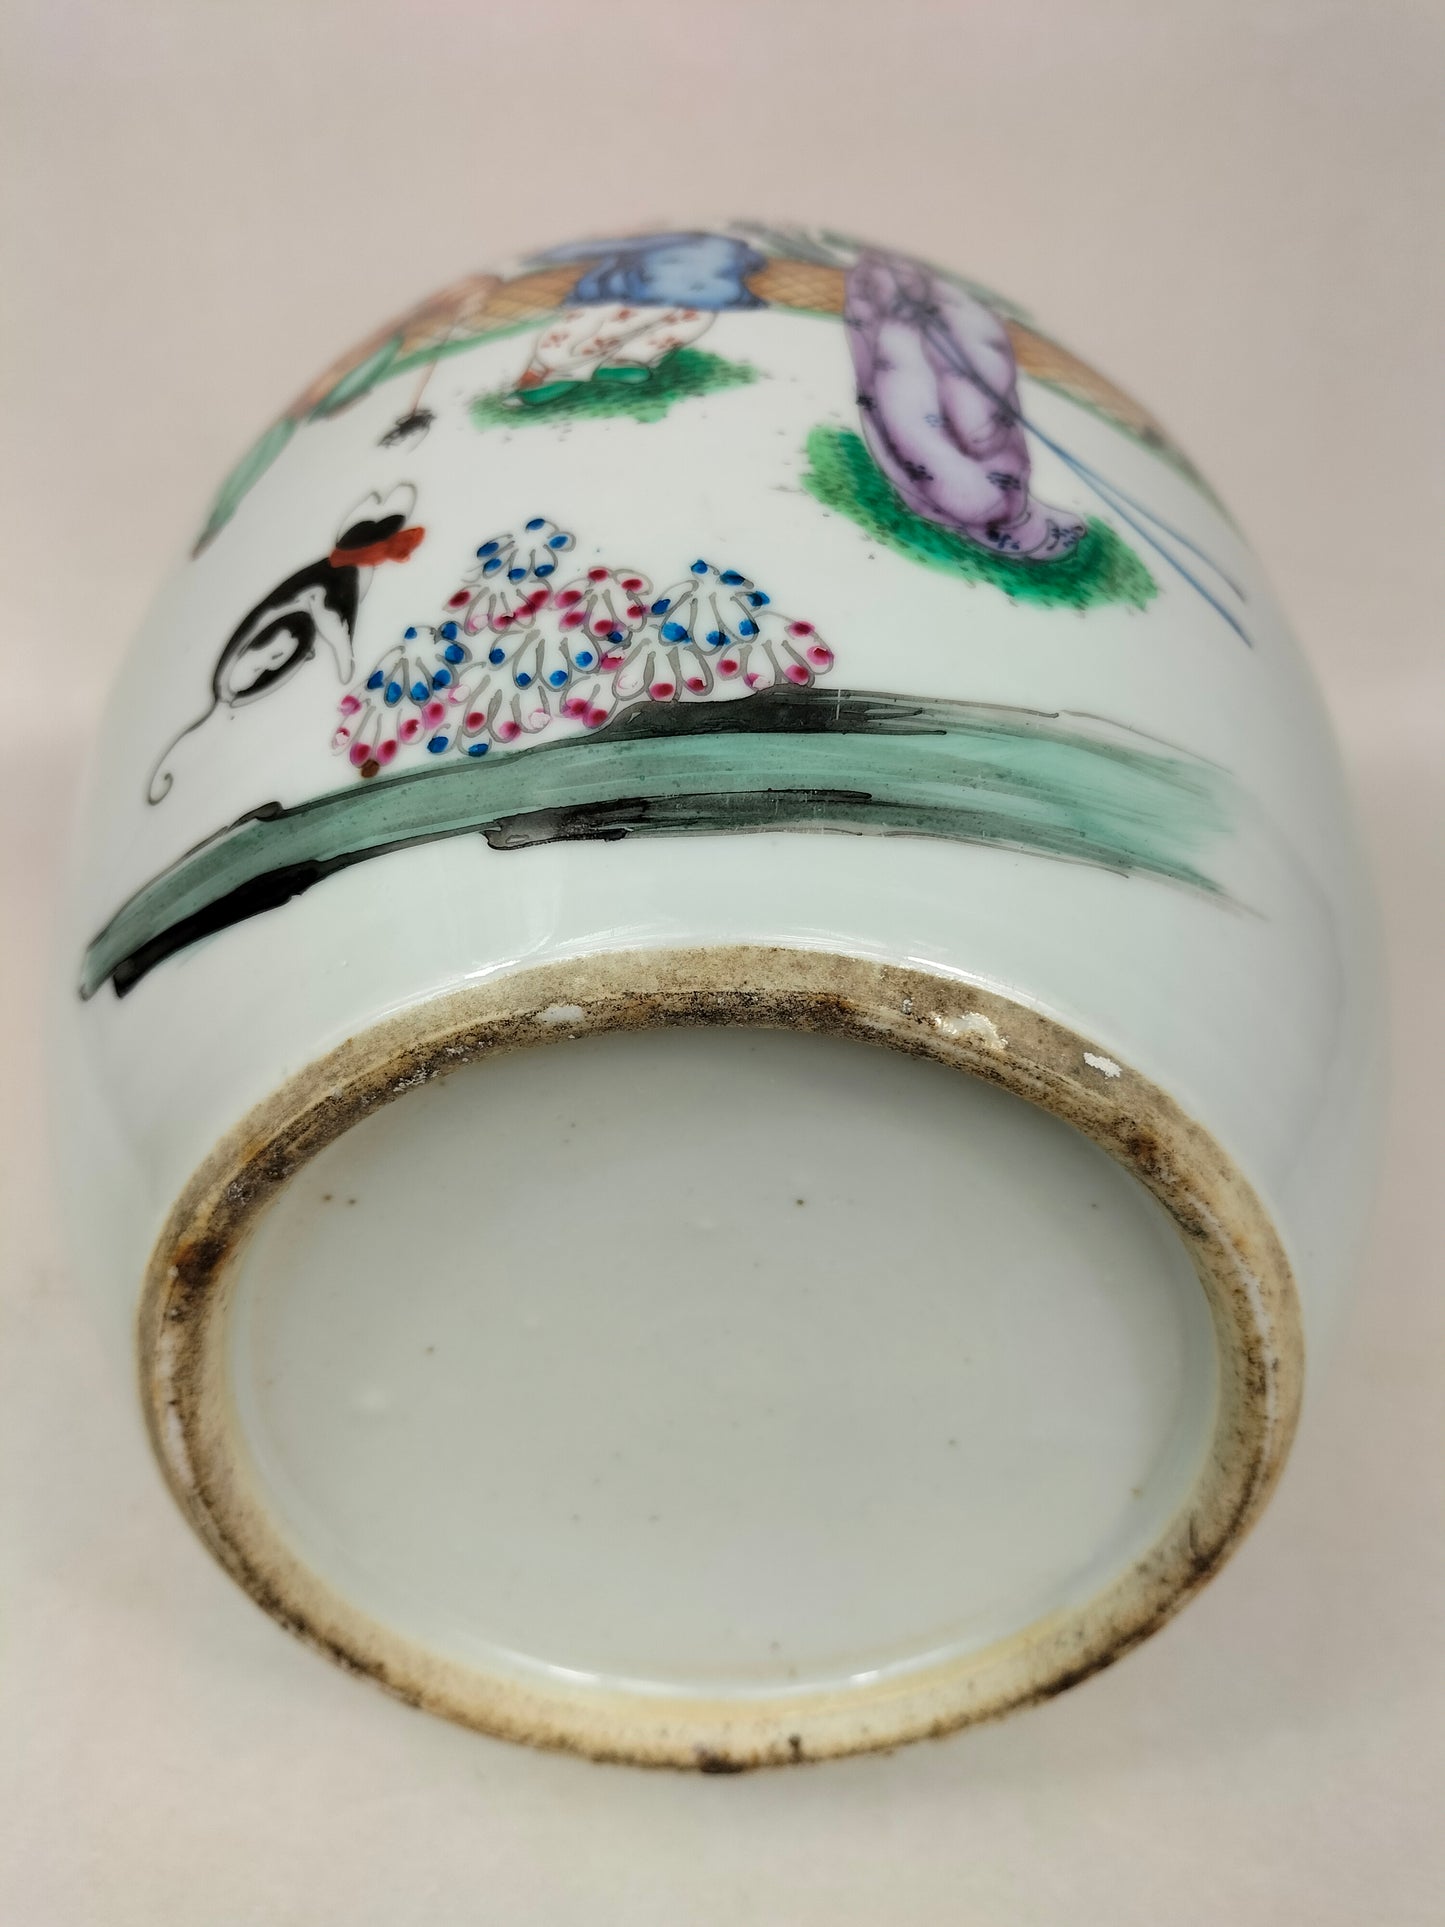 装饰园林景观的古董中国姜罐 // 民国时期（1912-1949）